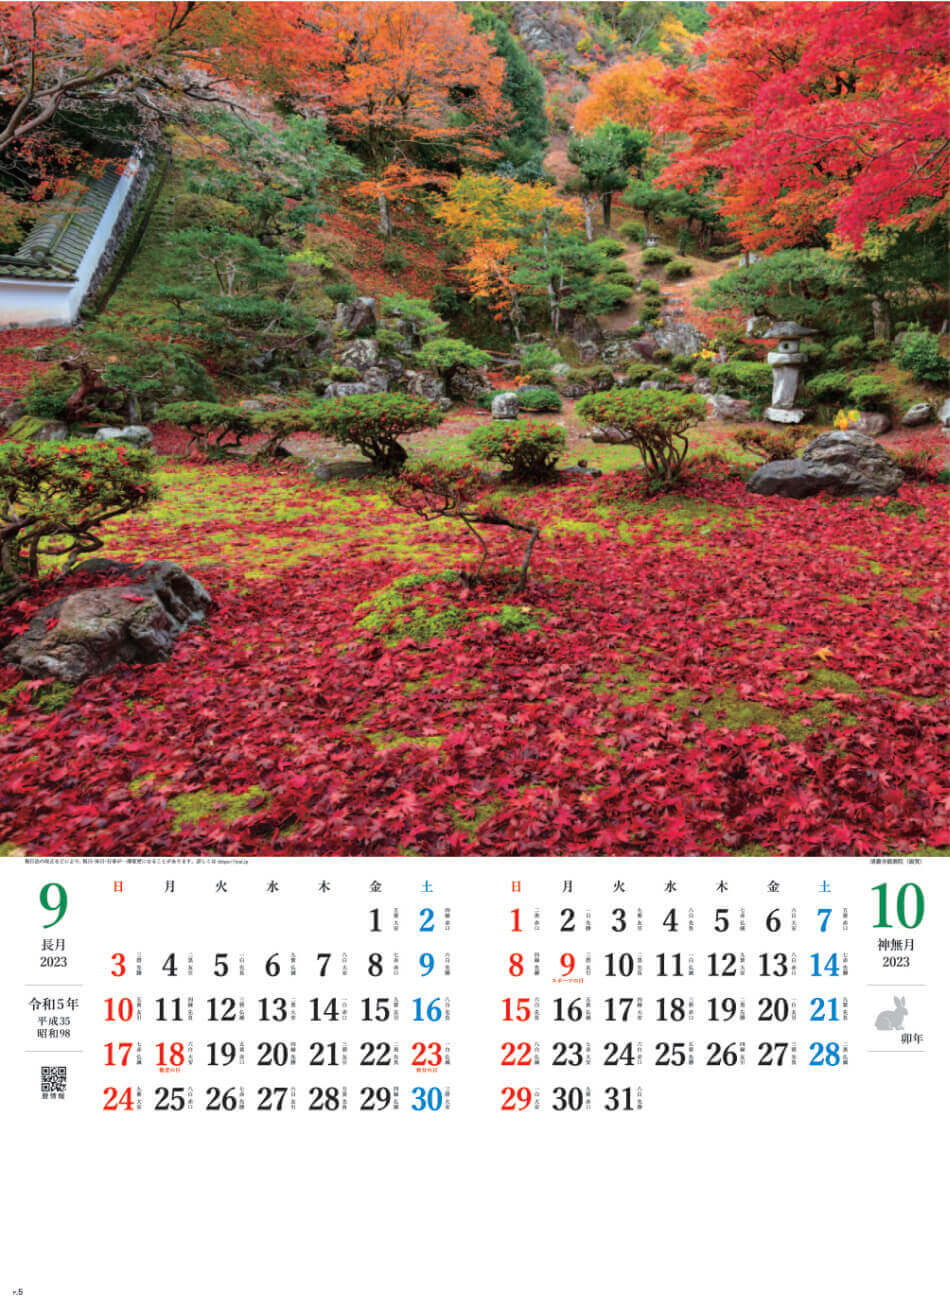 9/10月 青龍寺徳源院(滋賀) 庭の心 2023年カレンダーの画像